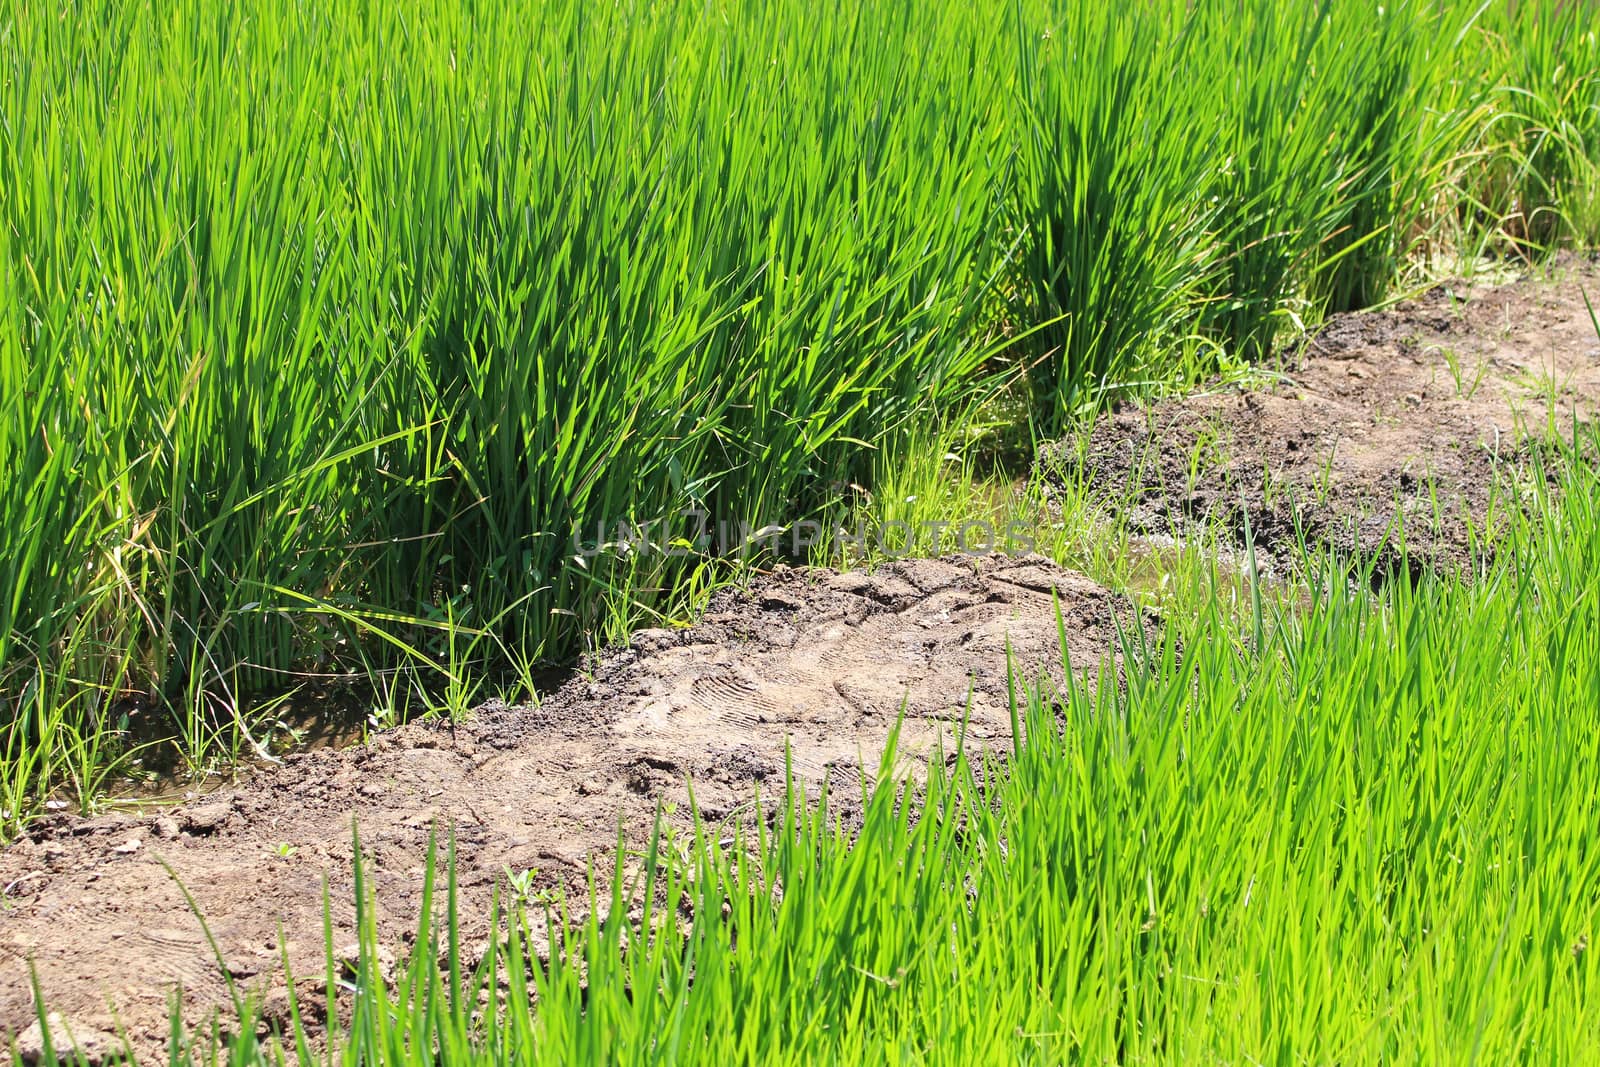 Growing rice during water shortage